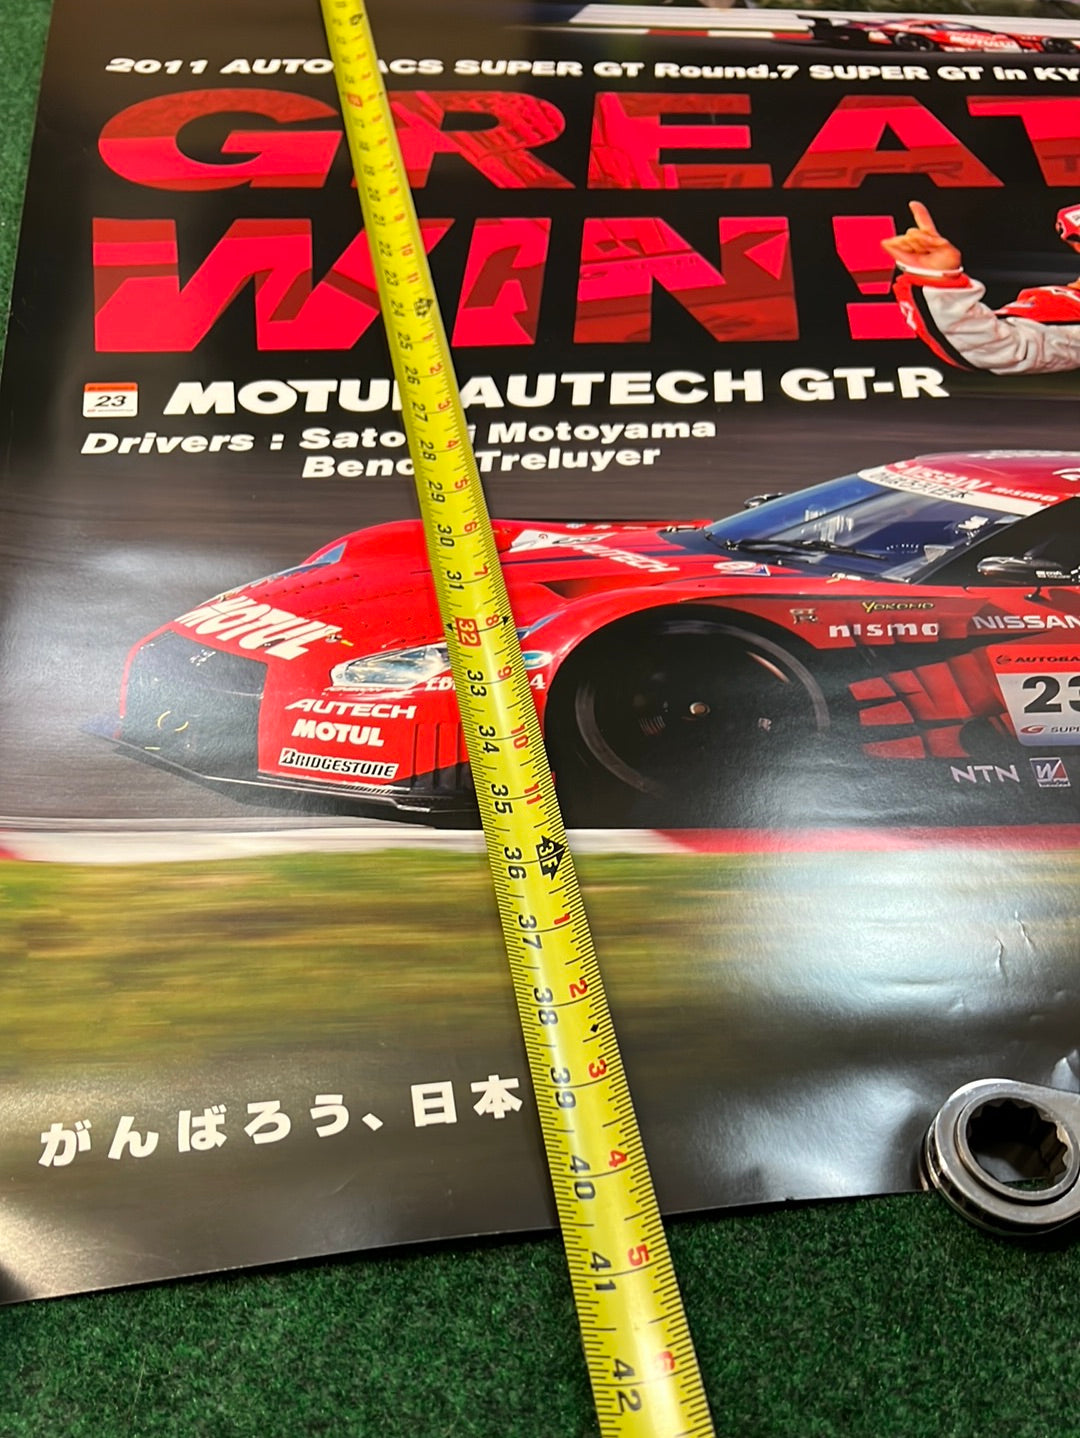 NISSAN Super GT 2011 Round 7 Motul Autech R35 GTR Winner Poster